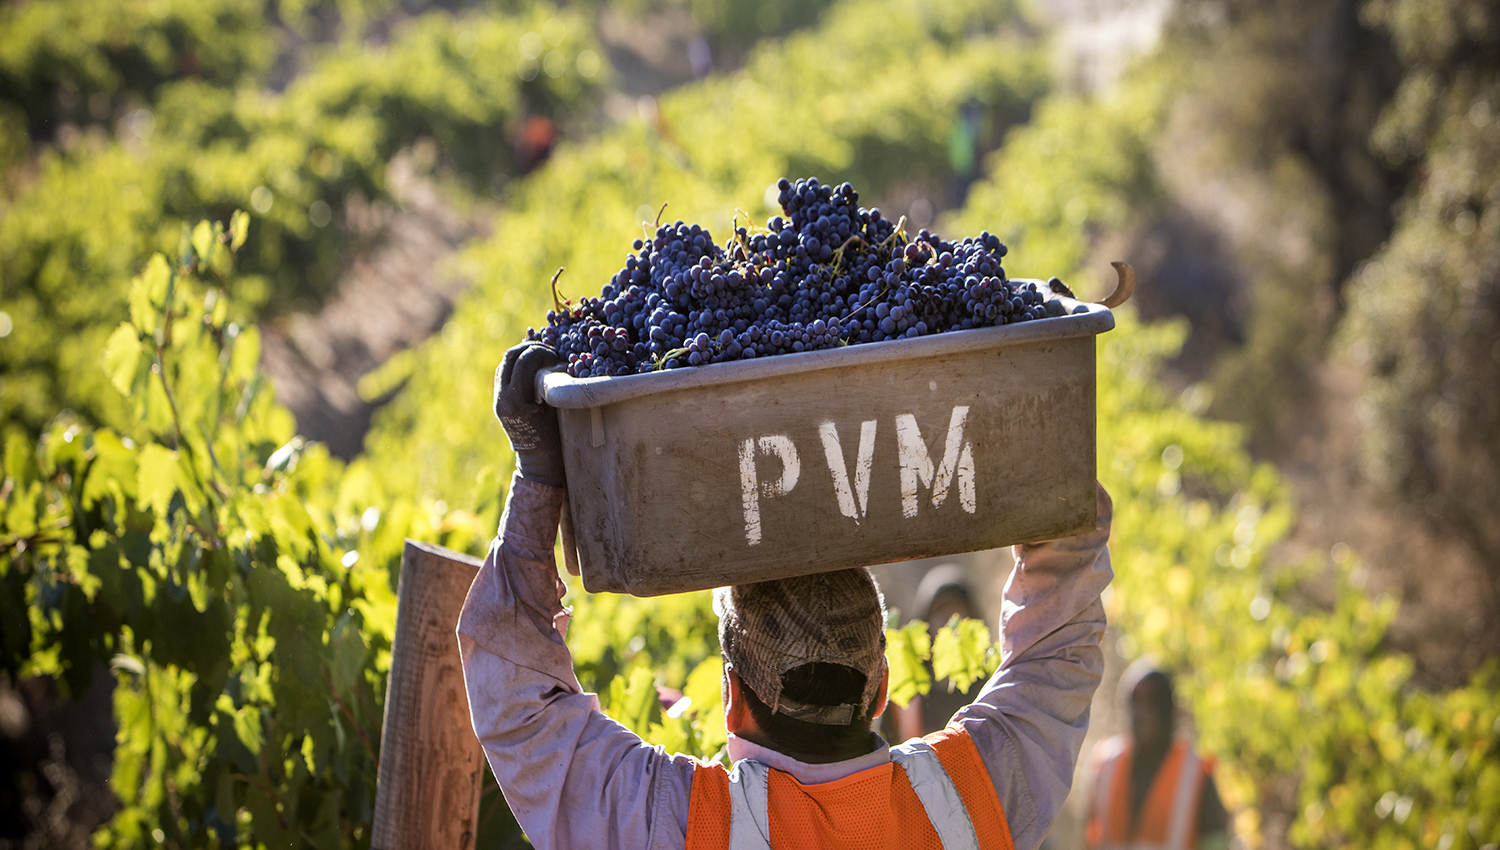 A vineyard worker carries freshly picked wine grapes